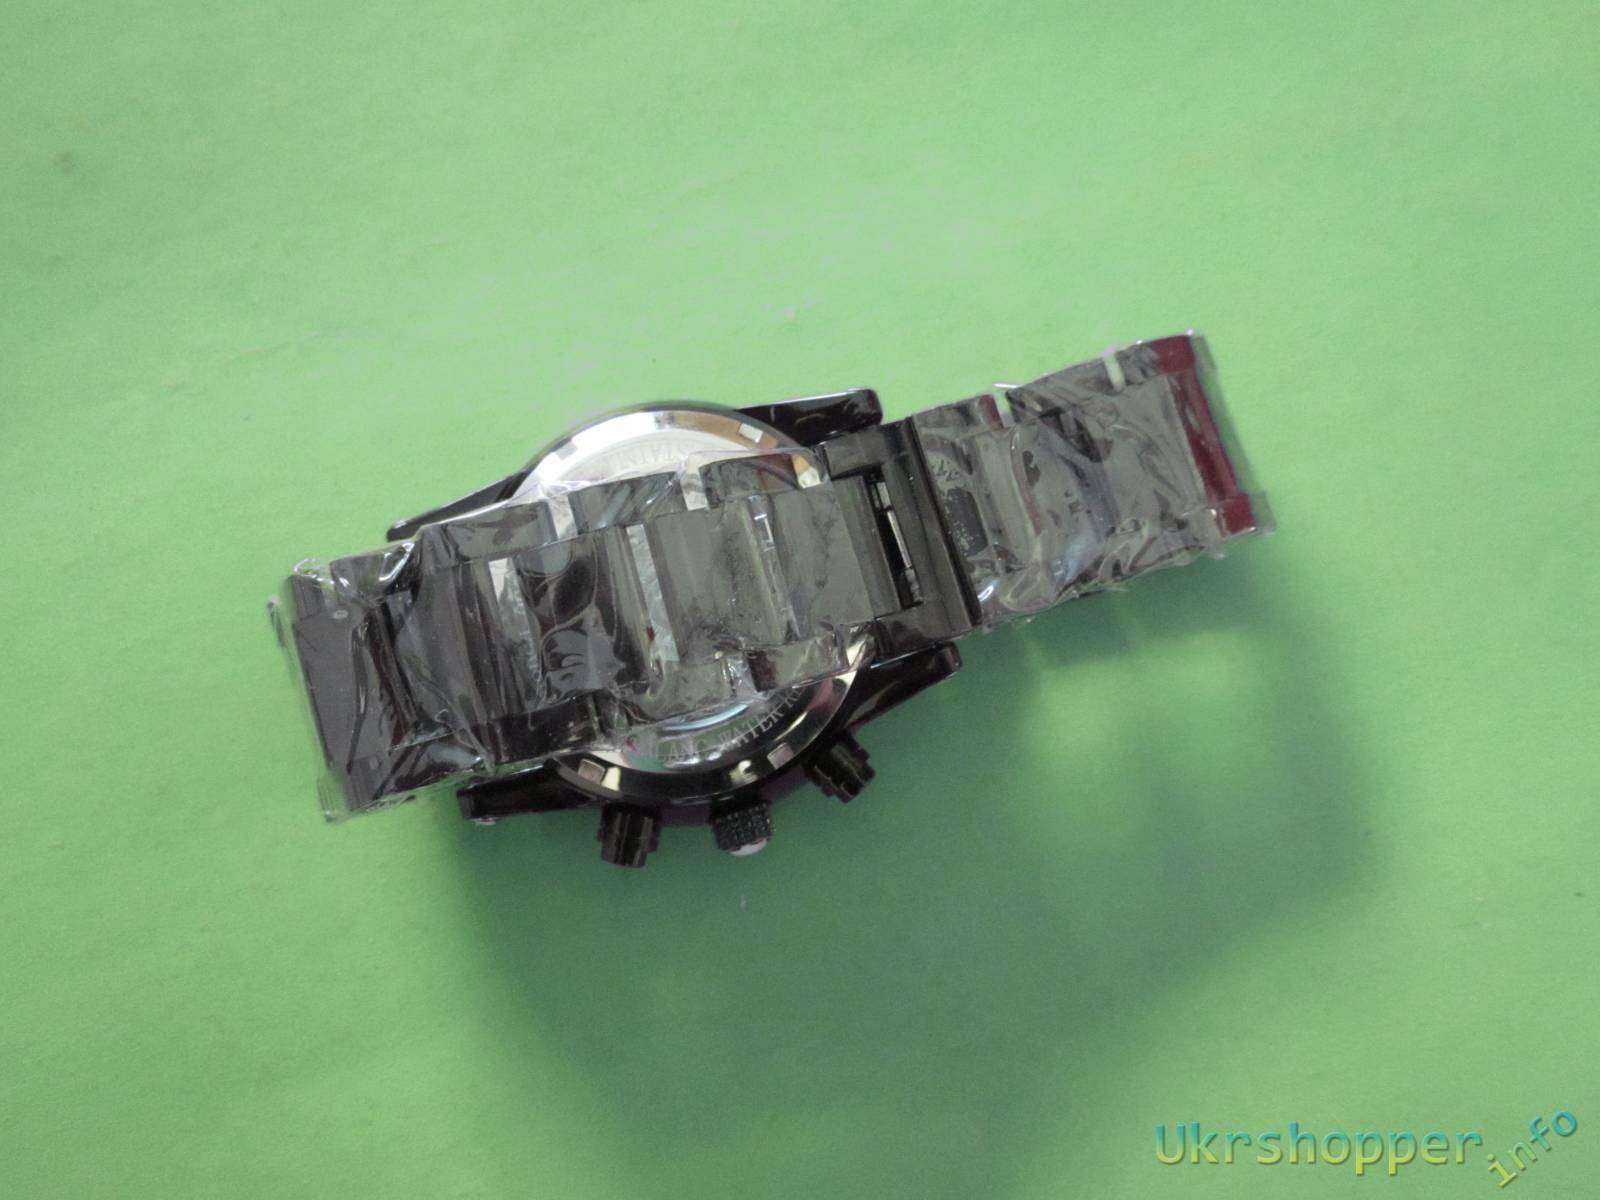 Другие - Украина: Обзор дорогих подарочных механических часов хронографа реплика MONTBLANC